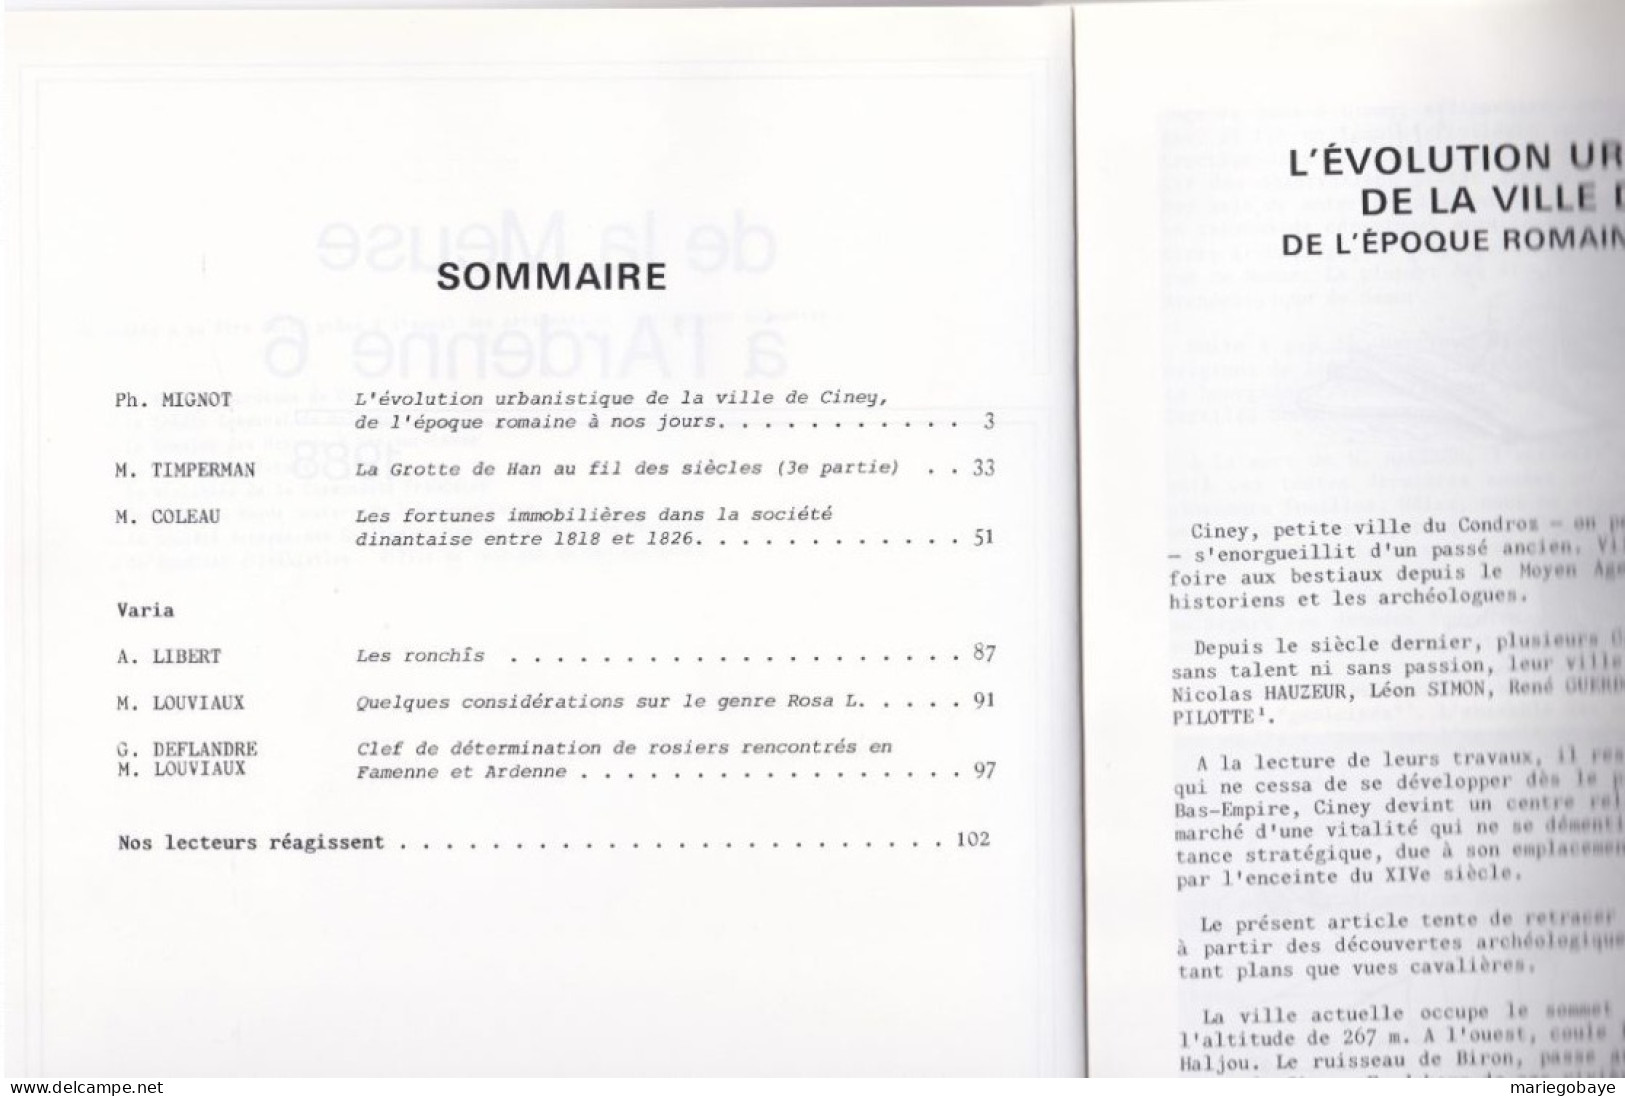 De La Meuse à L’Ardenne 6 1988 CINEY HAN-sur-LESSE DINANT ROSA L. 104 Pages - Bélgica